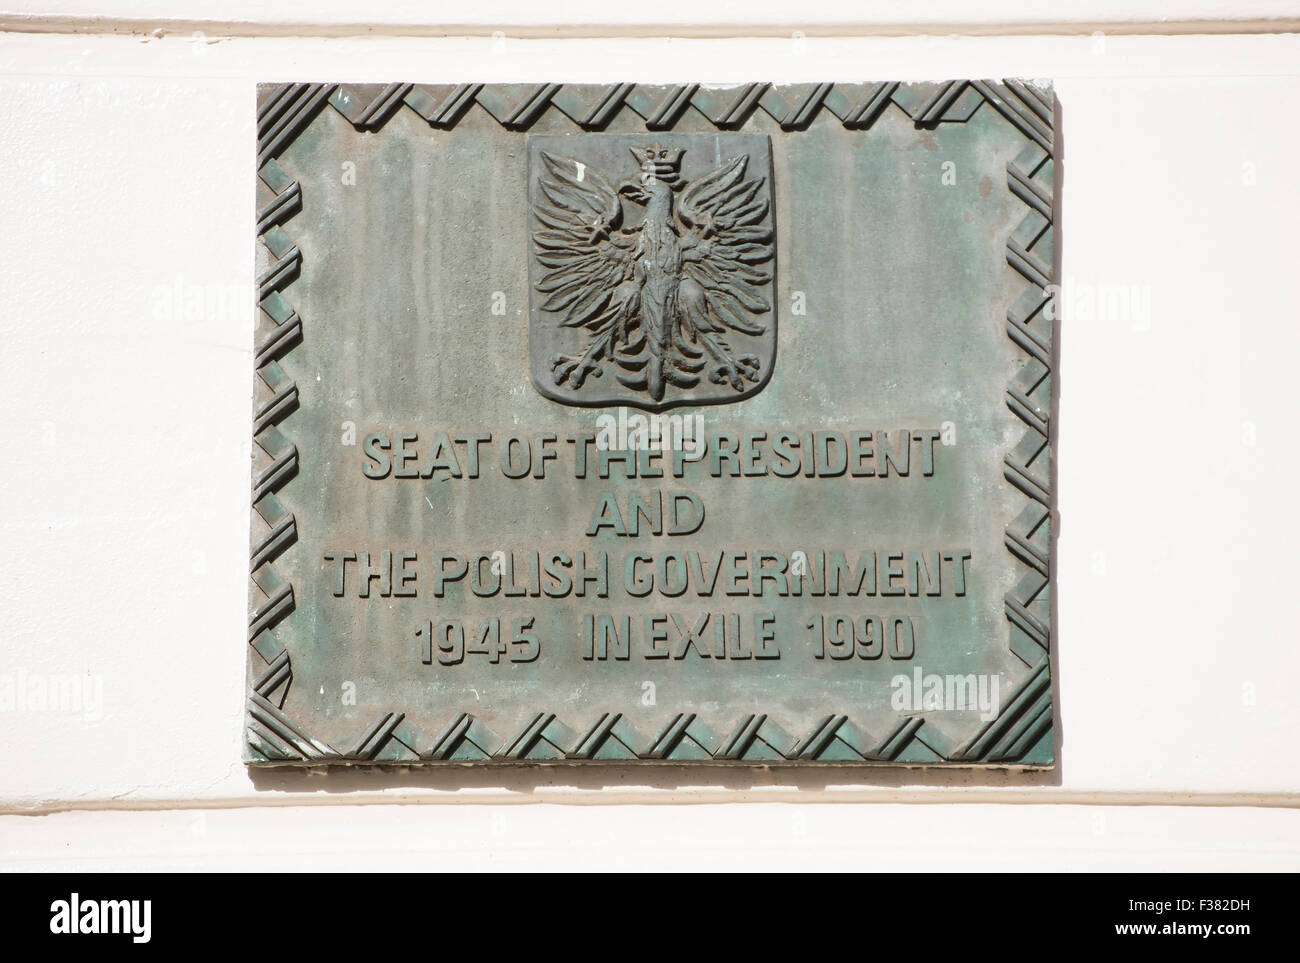 Plakette markiert das Gebäude, das den Präsidenten und die polnische Regierung im Exil von 1945 bis 1990, Belgravia, London untergebracht Stockfoto